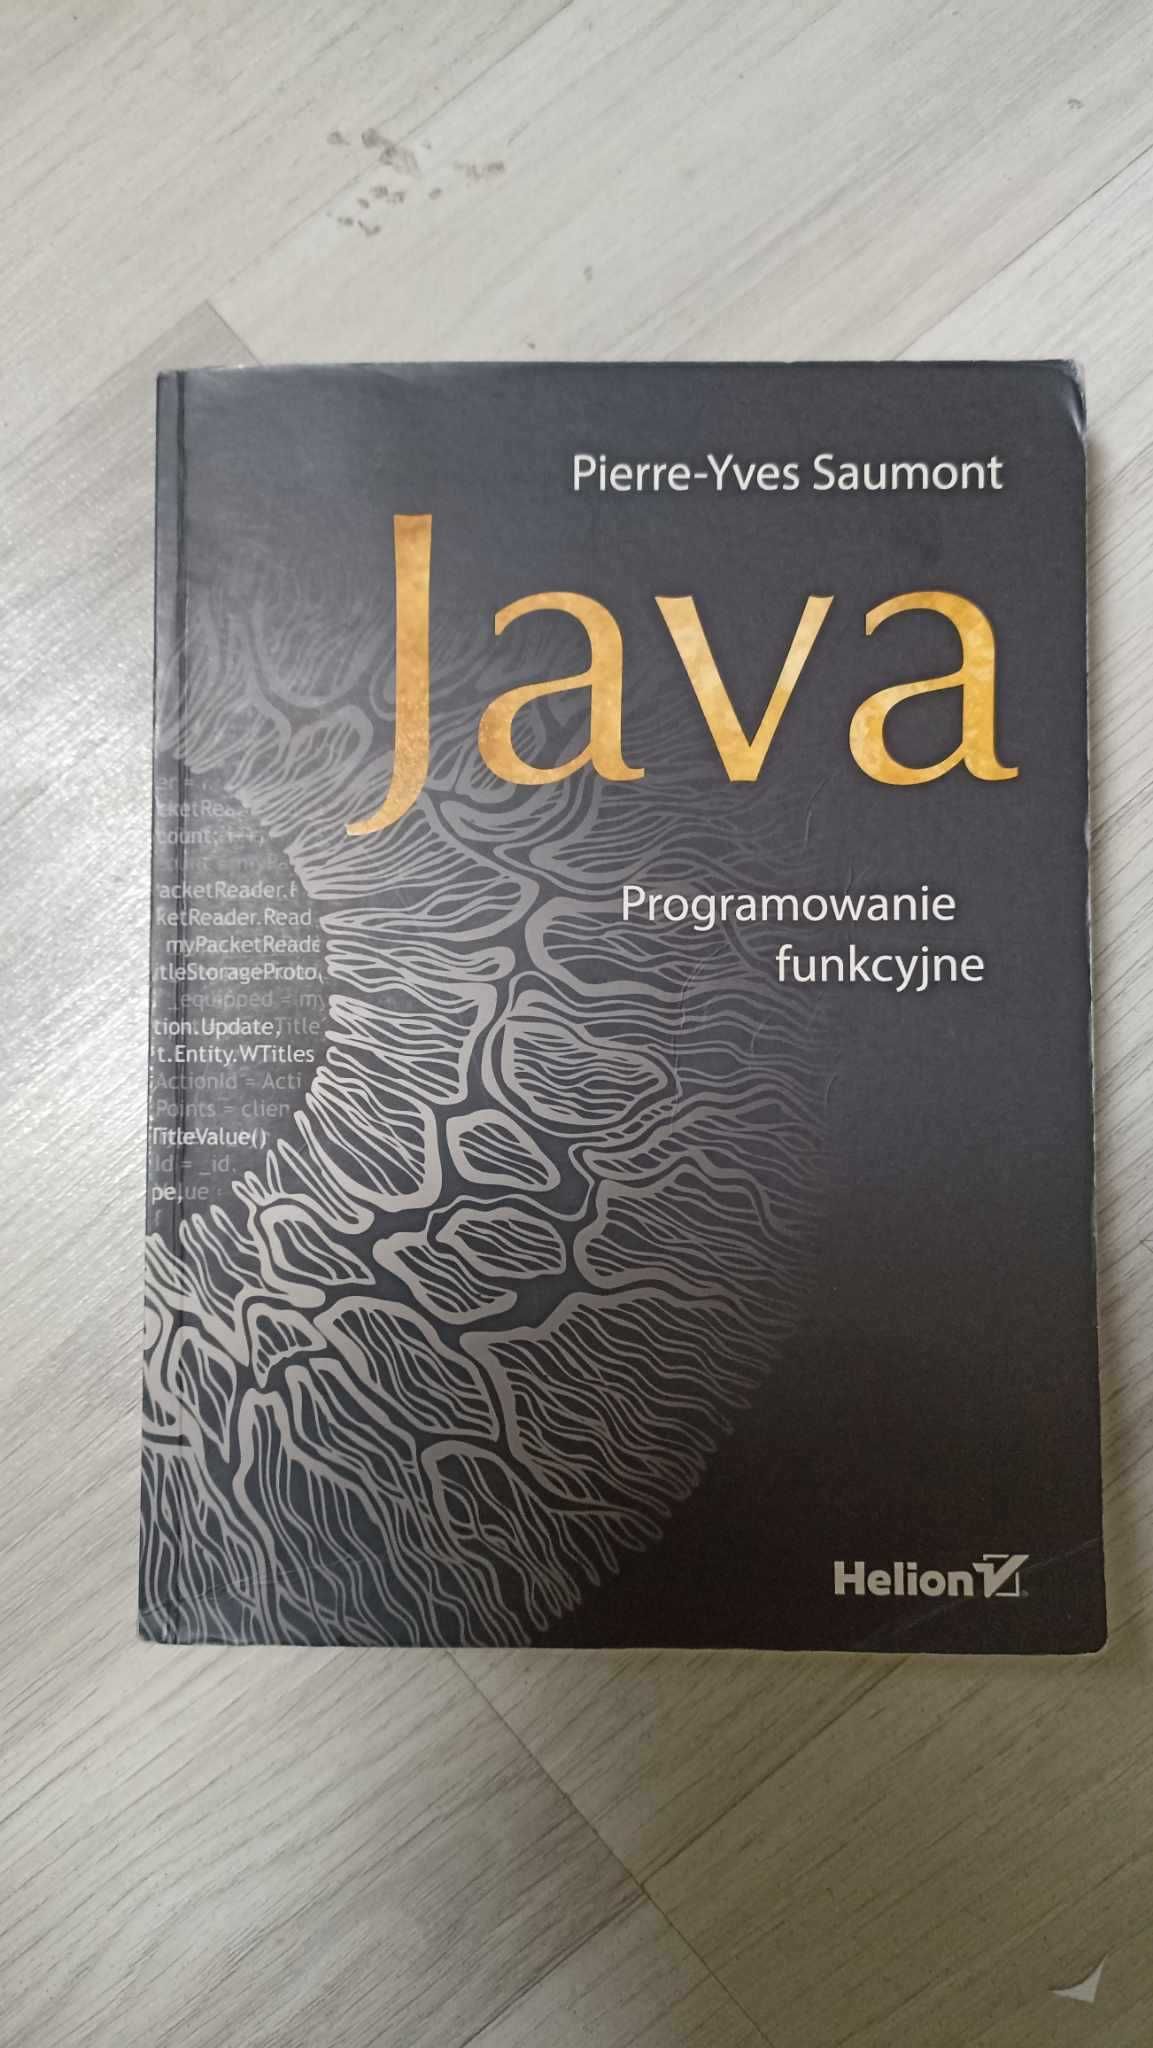 Java programowanie funkcyjne Pierre-Yves Saumont